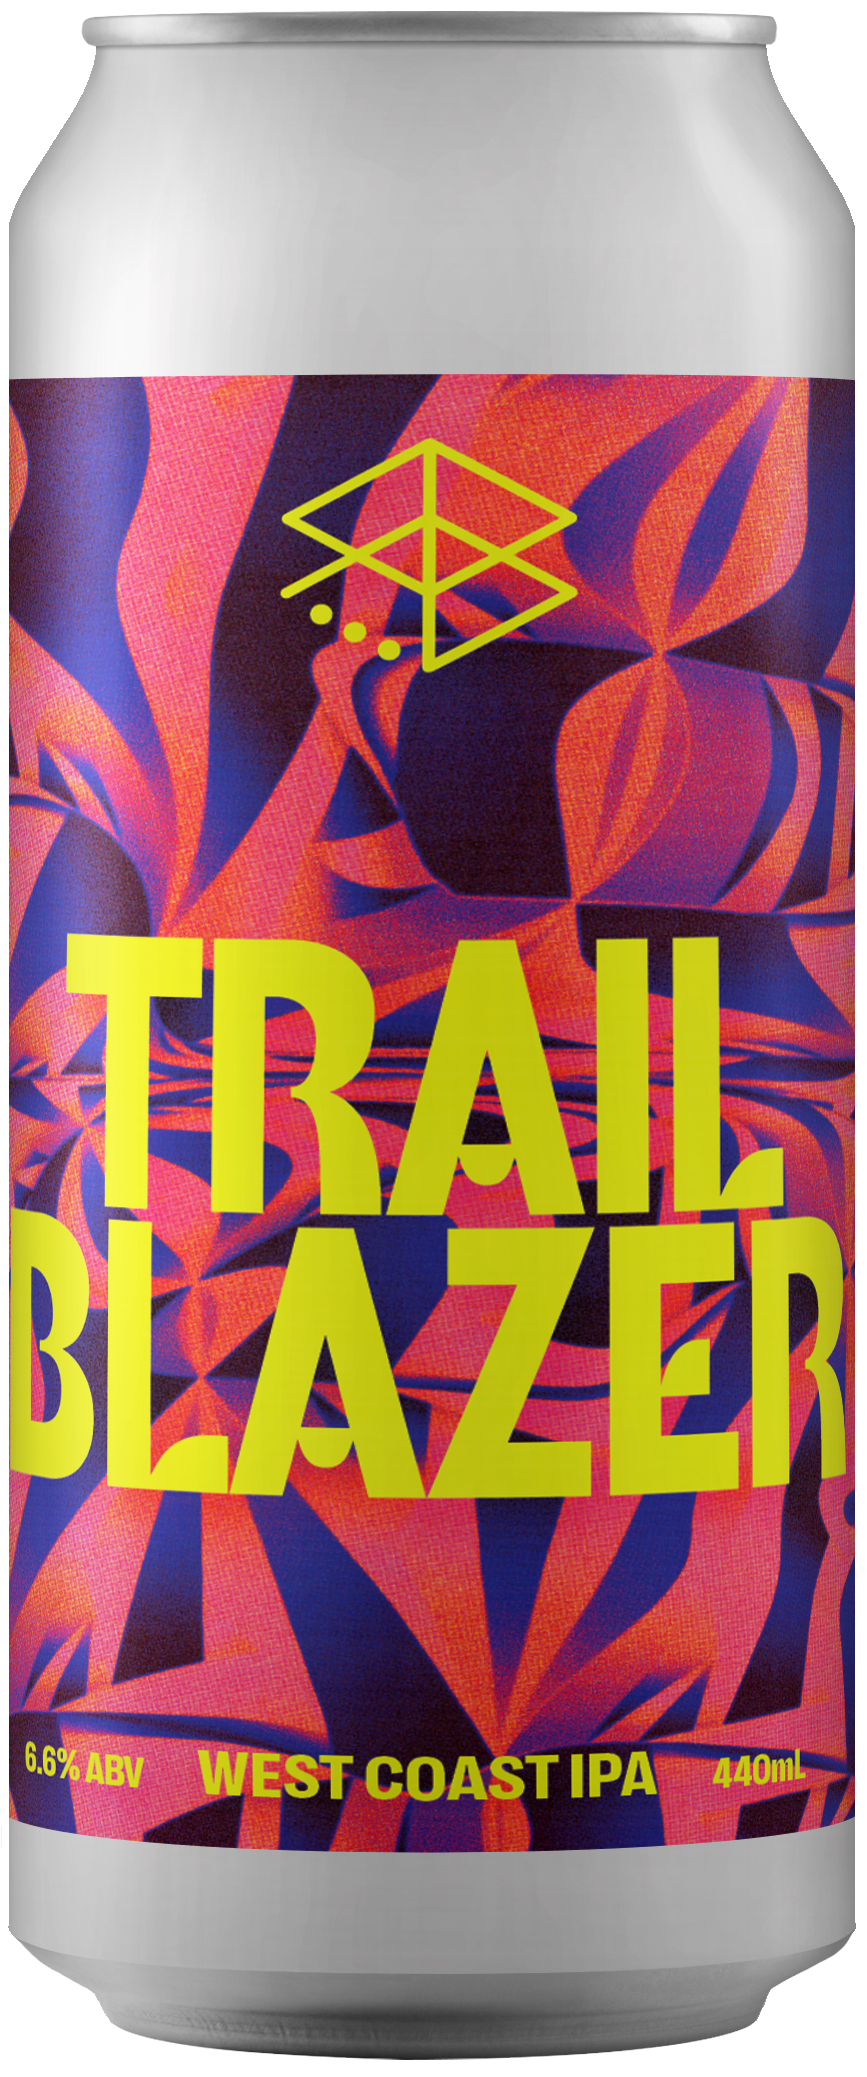 Trail Blazer - West Coast IPA